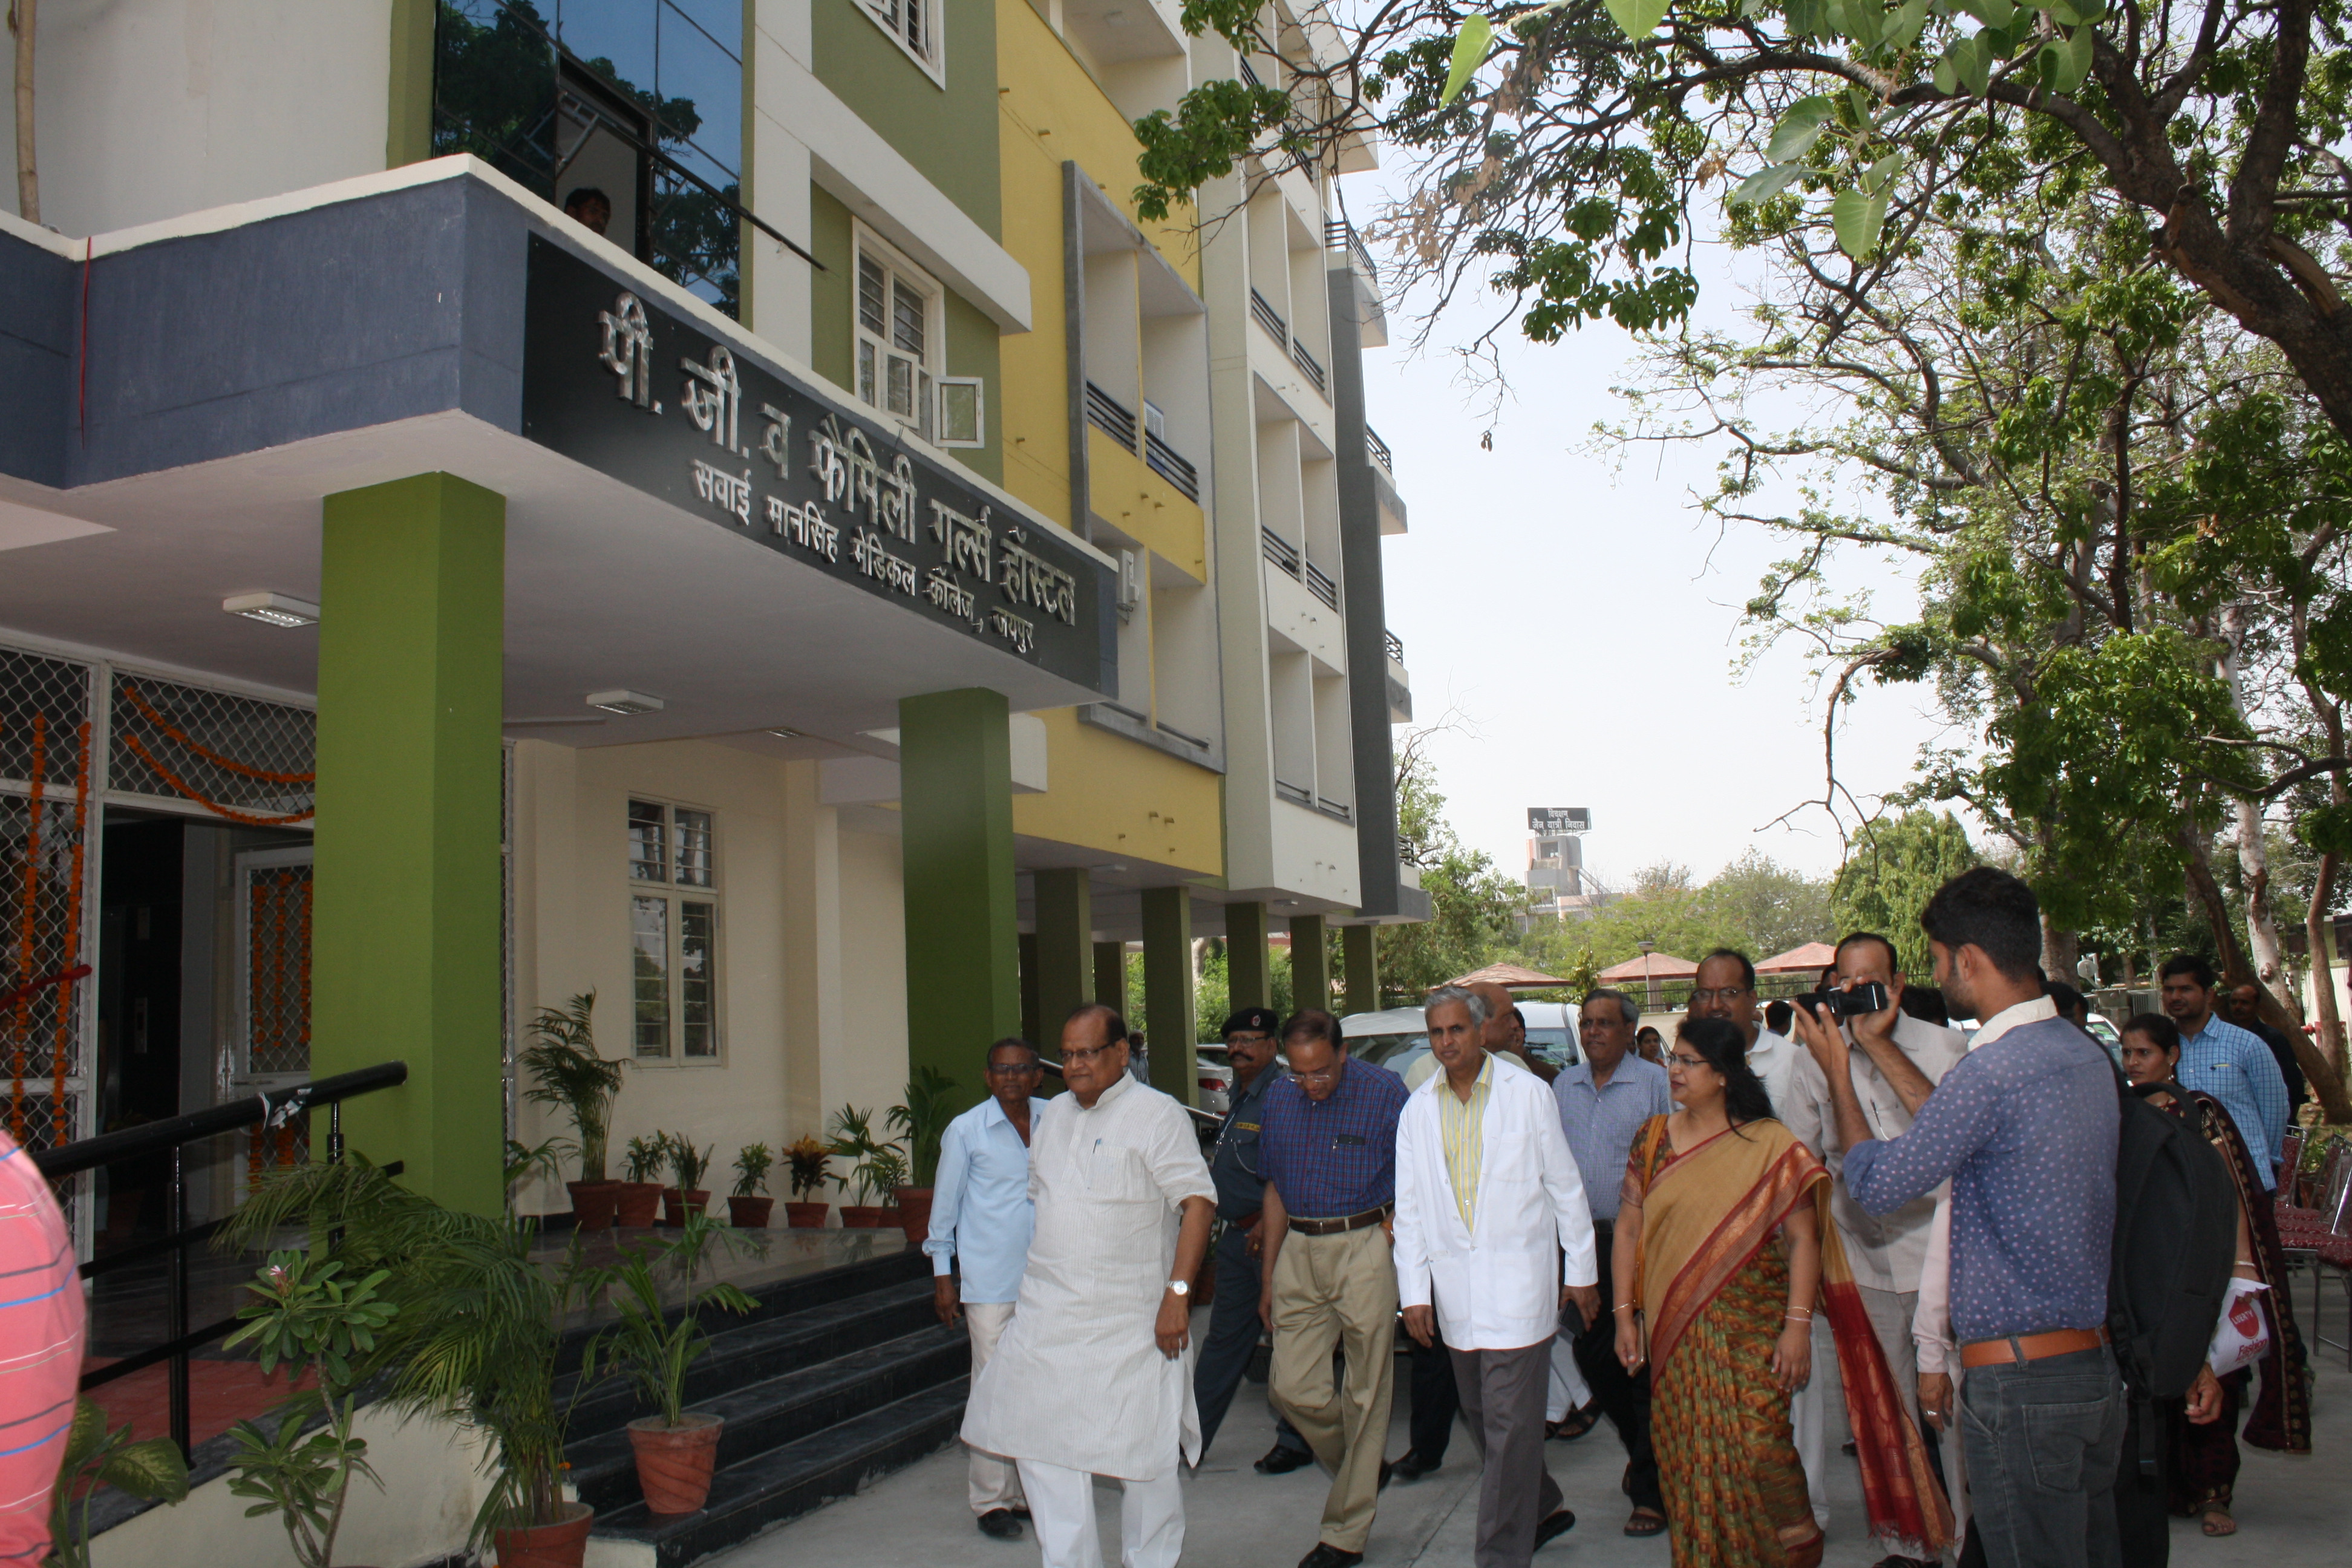 Sawai Man Singh Medical College, Jaipur hostel